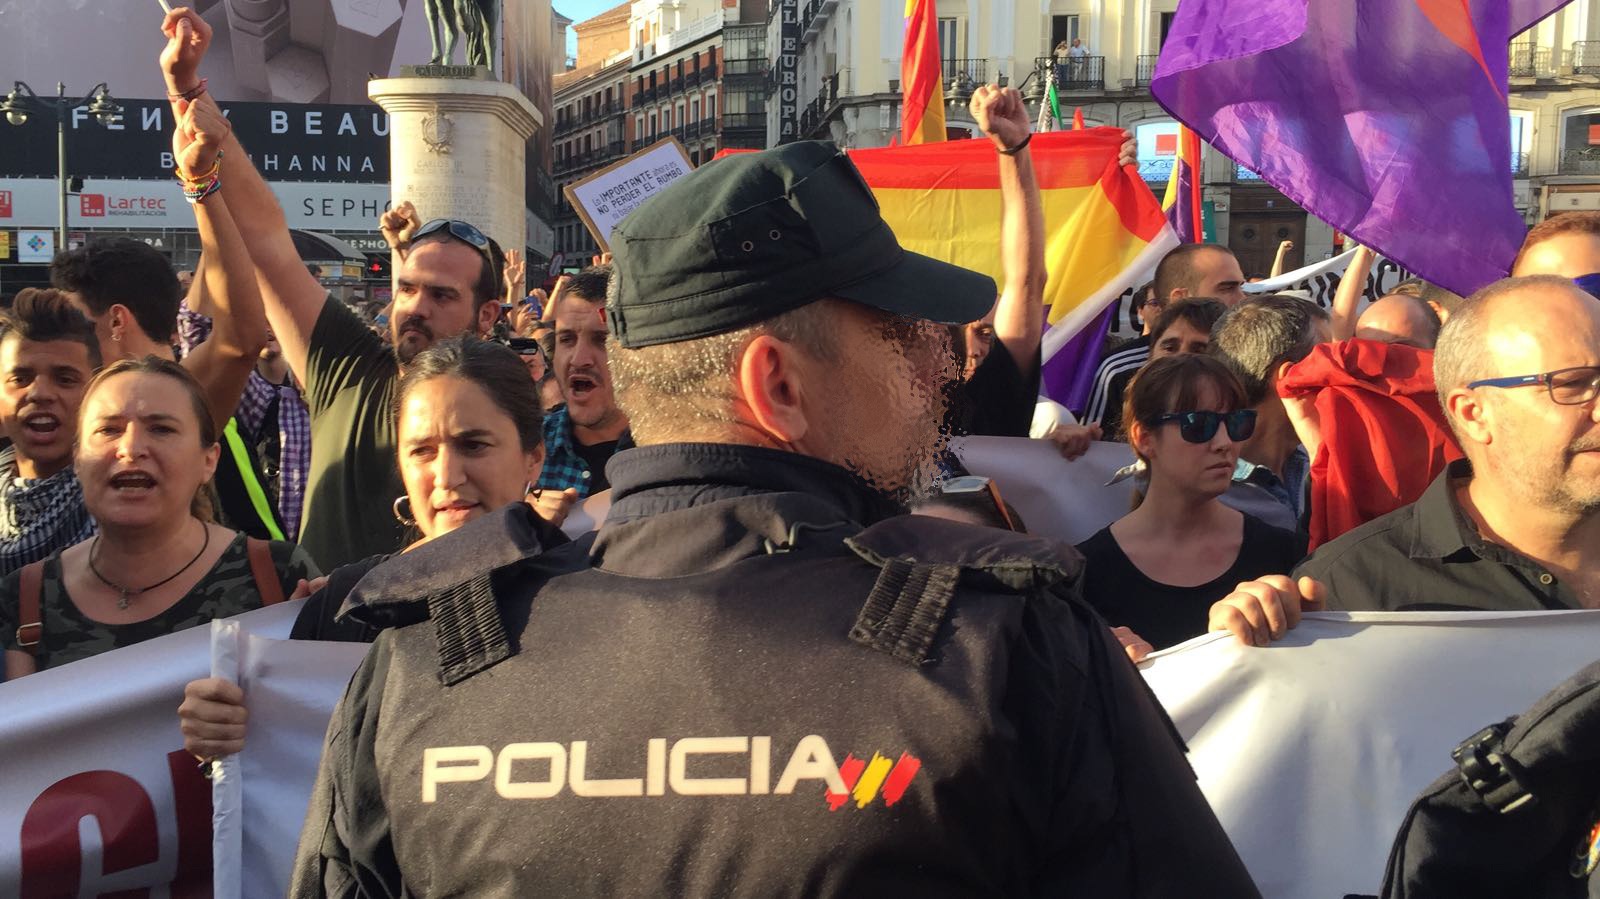 Partidarios del derecho a decidir en la Puerta del Sol